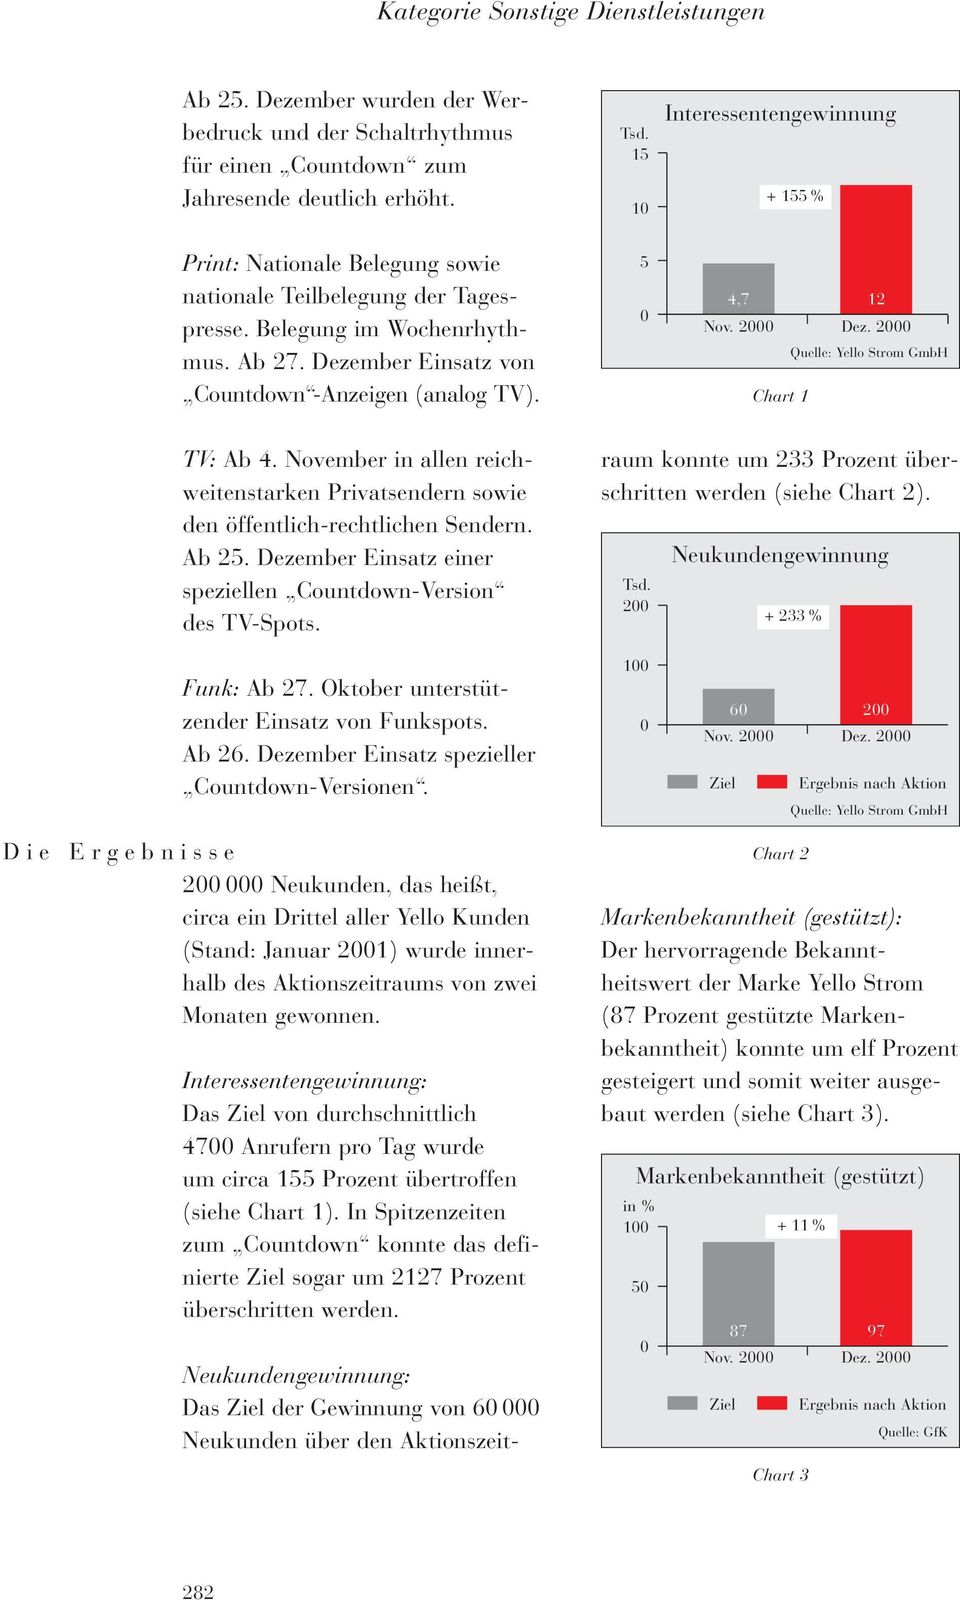 5 0 4,7 12 Nov. 2000 Dez. 2000 Quelle: Yello Strom GmbH Chart 1 TV: Ab 4. November in allen reichweitenstarken Privatsendern sowie den öffentlich-rechtlichen Sendern. Ab 25.